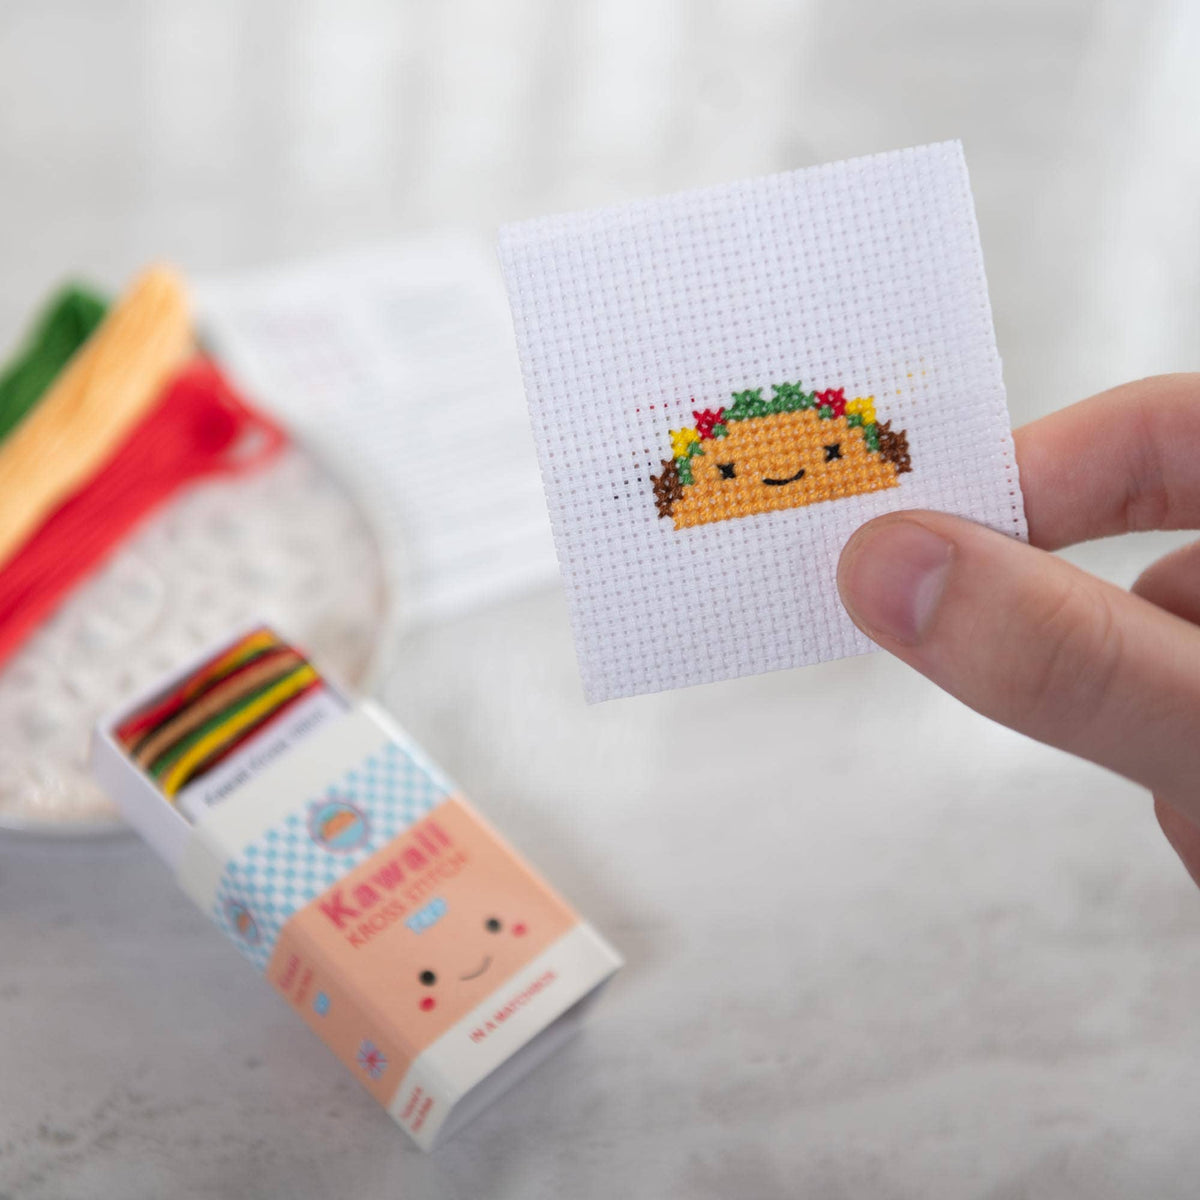 Kawaii Taco Mini Cross Stitch Kit in a Matchbox